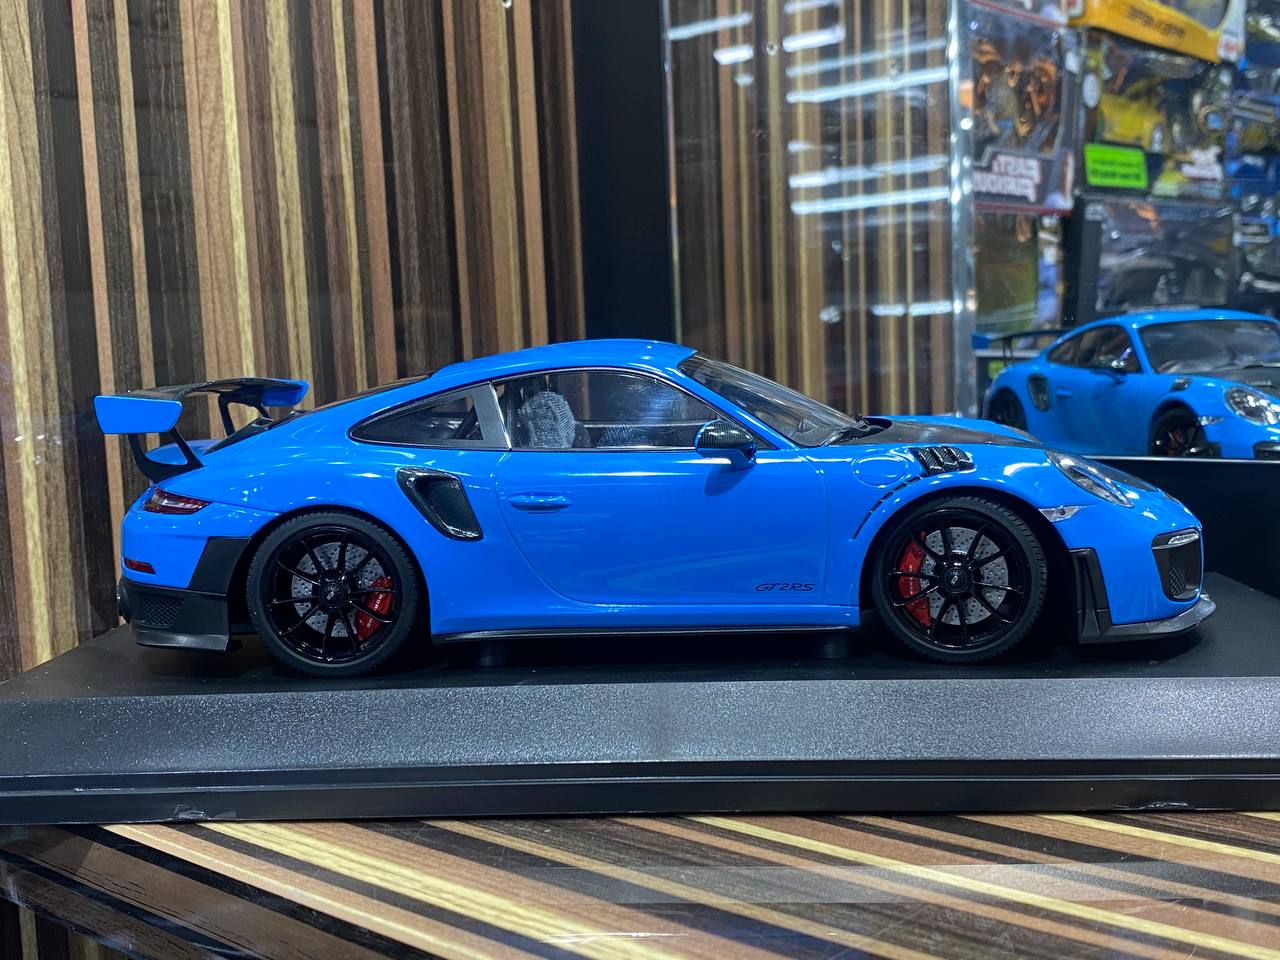 Porsche 911 GT2 RS 2018 Minichamps|Sold in Dturman.com Dubai UAE.